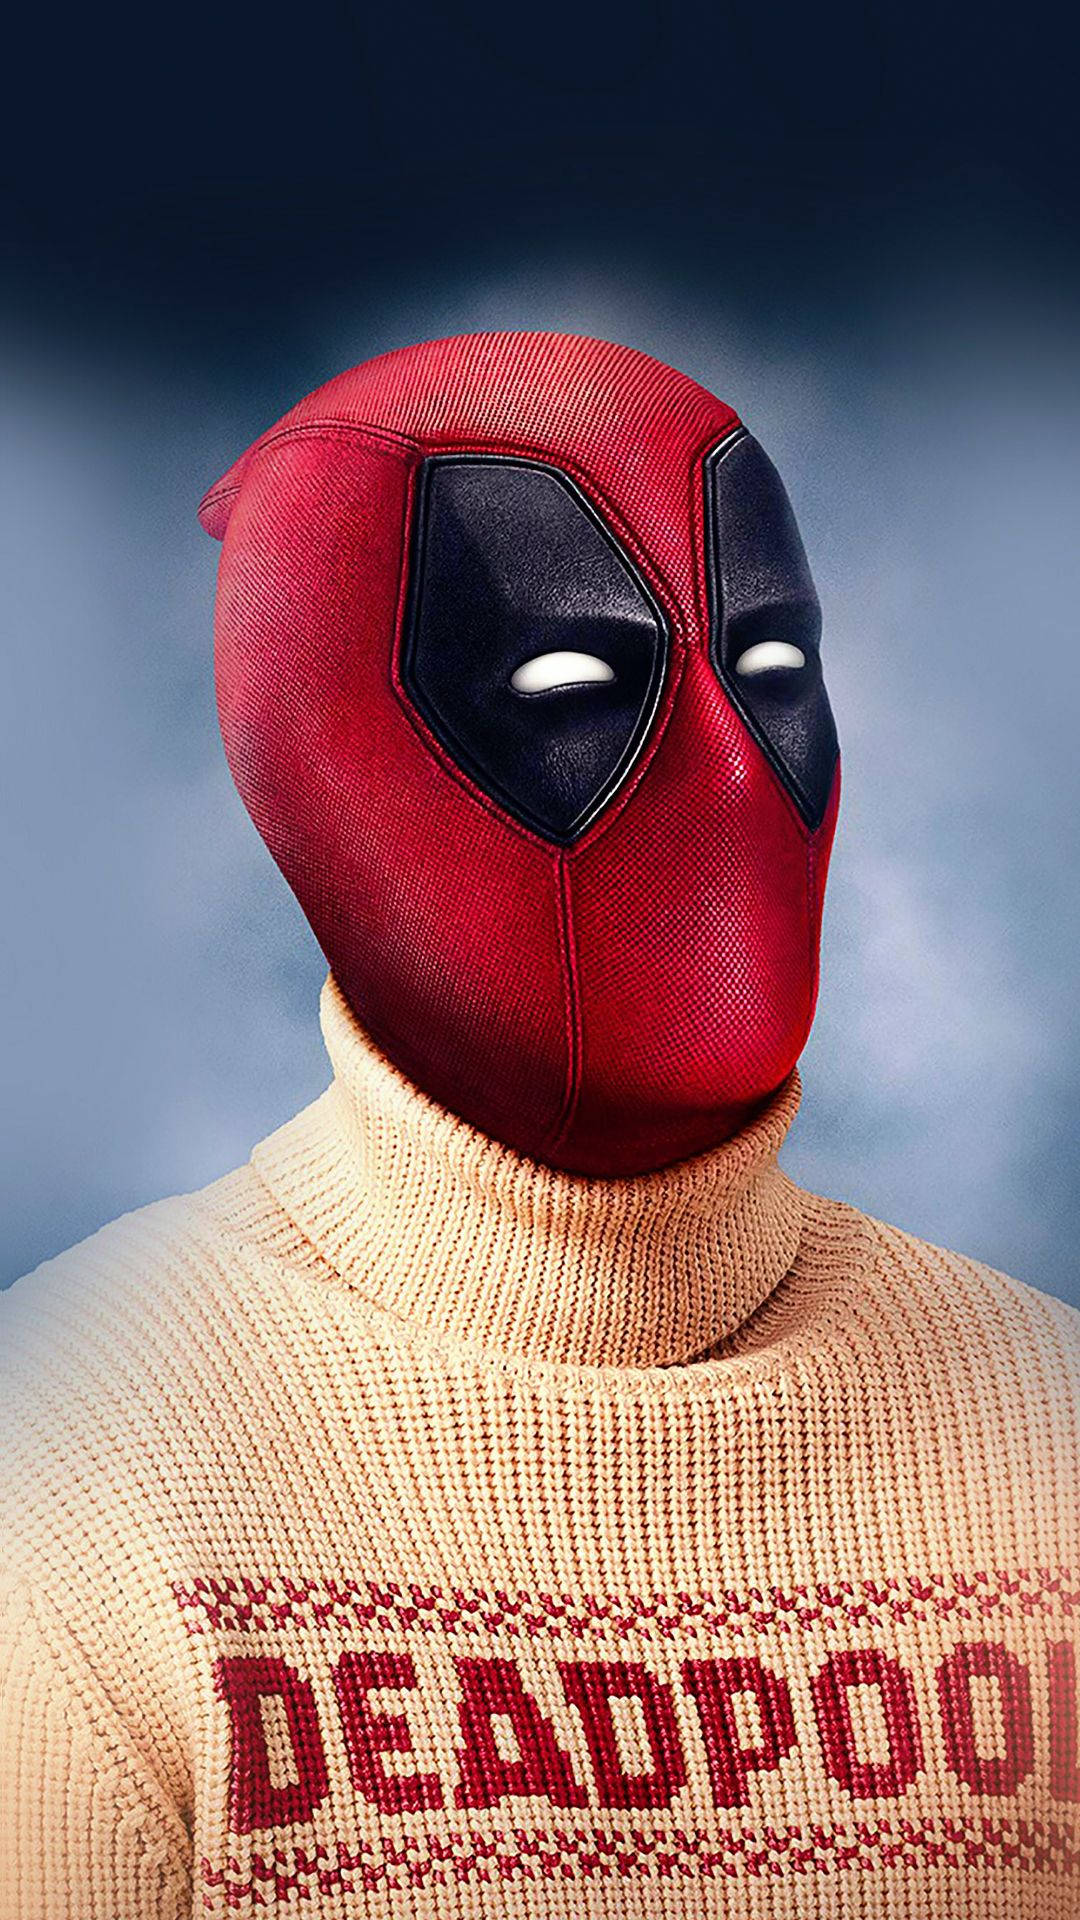 1080p Hd Deadpool Wearing Sweater Background